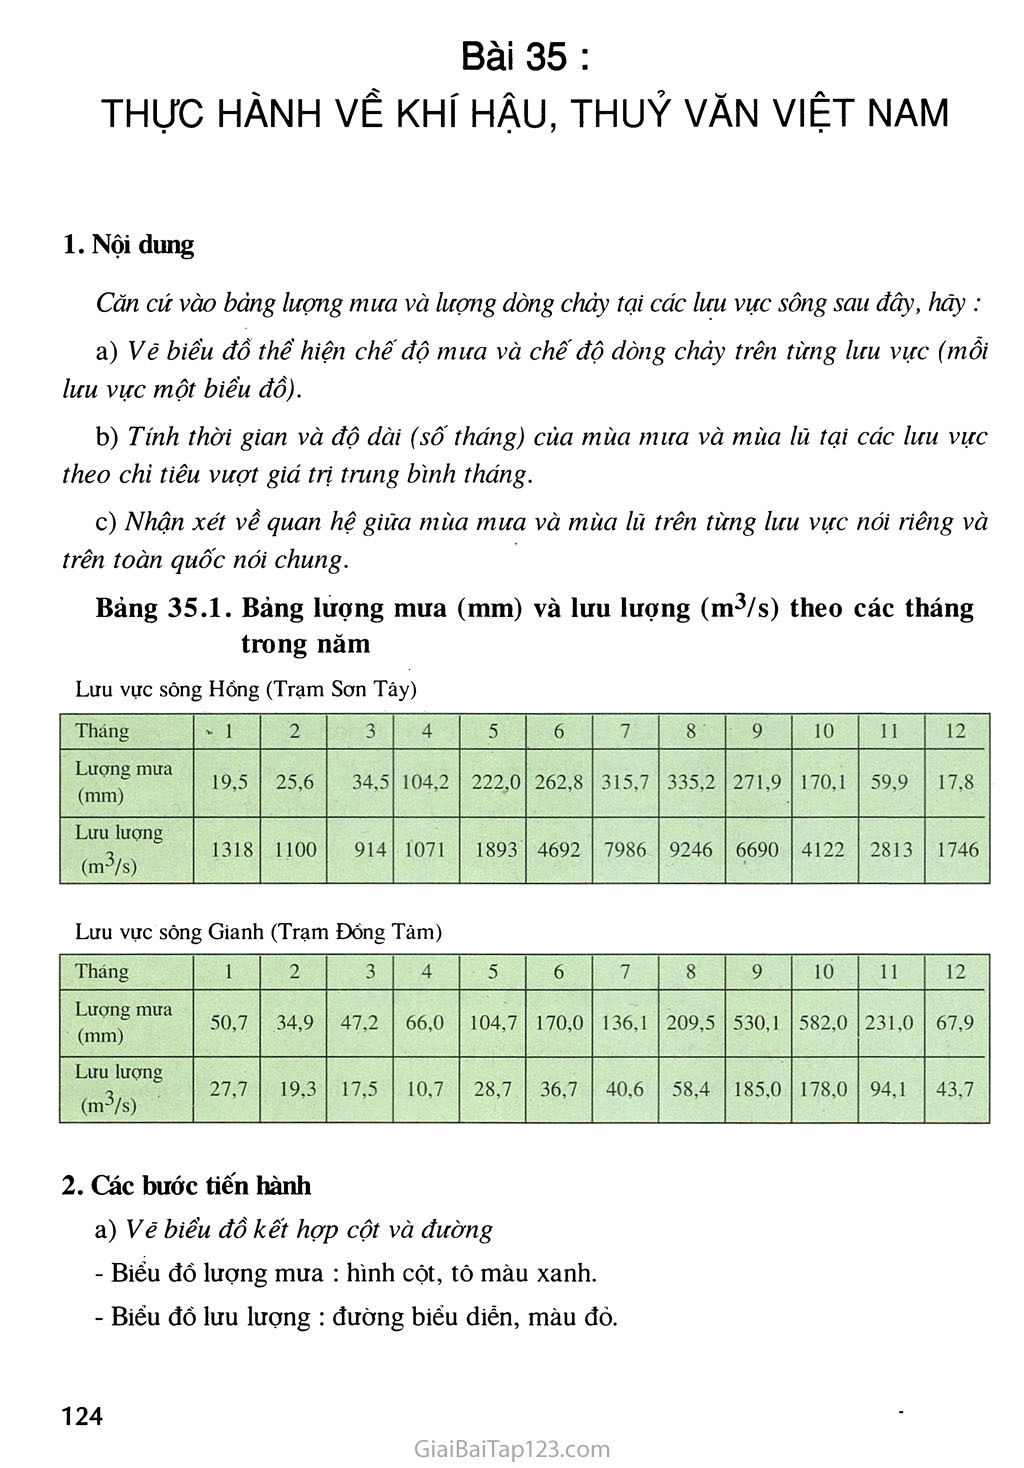 Bài 35. Thực hành về khi hậu, thuỷ văn Việt Nam trang 1